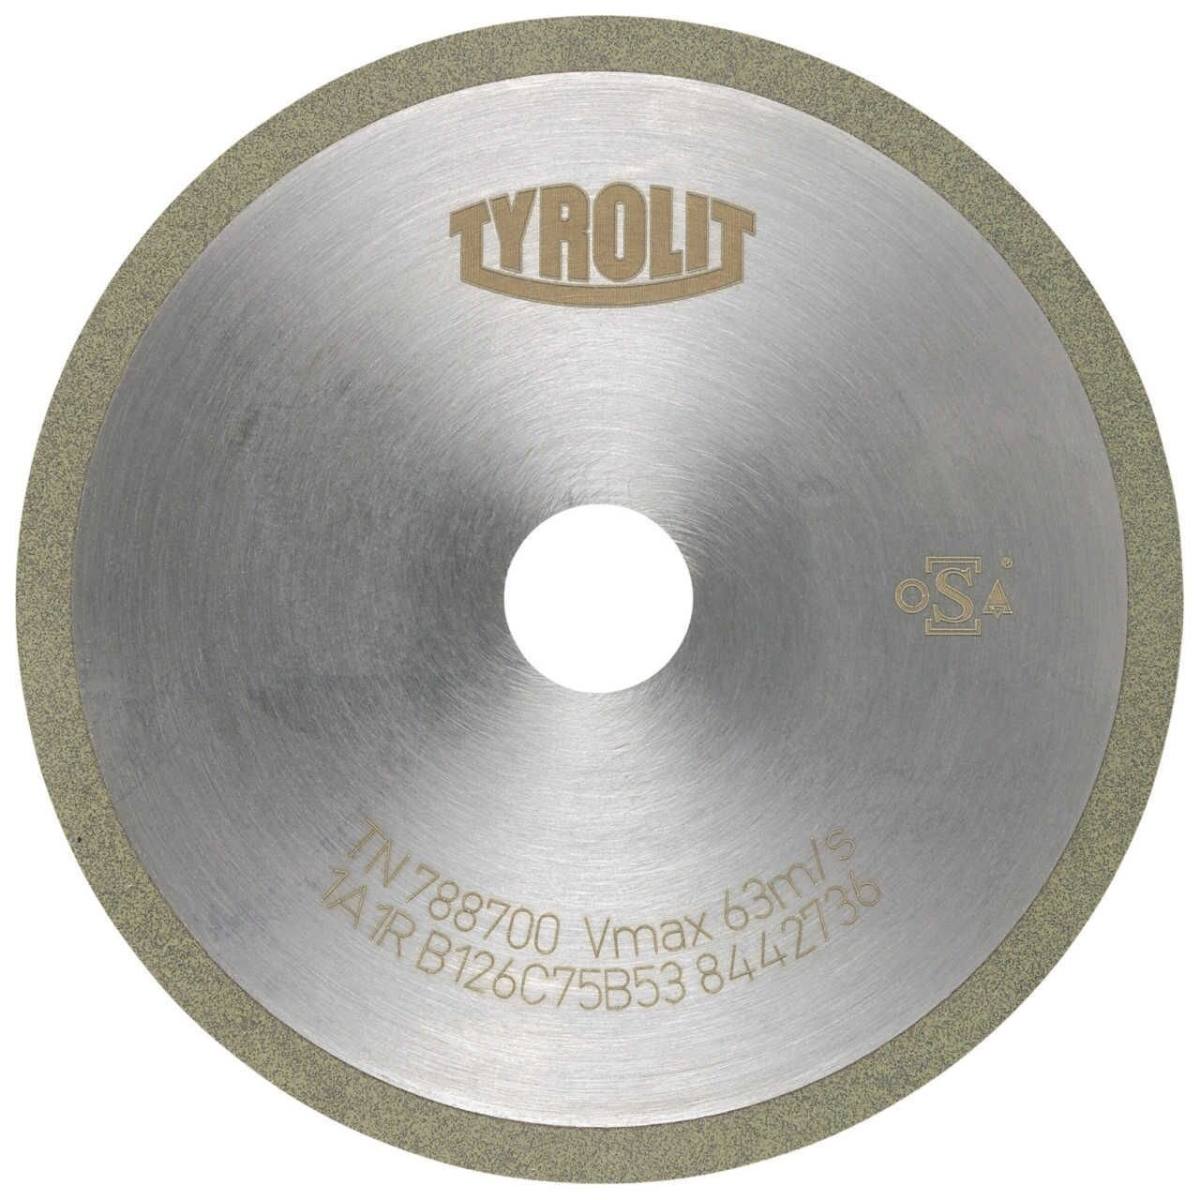 TYROLIT Herramientas rotativas de corte DxDxH 150x1x20 Para metal duro, forma: 1A1R (disco de corte con disco de corte continuo), Art. 317532